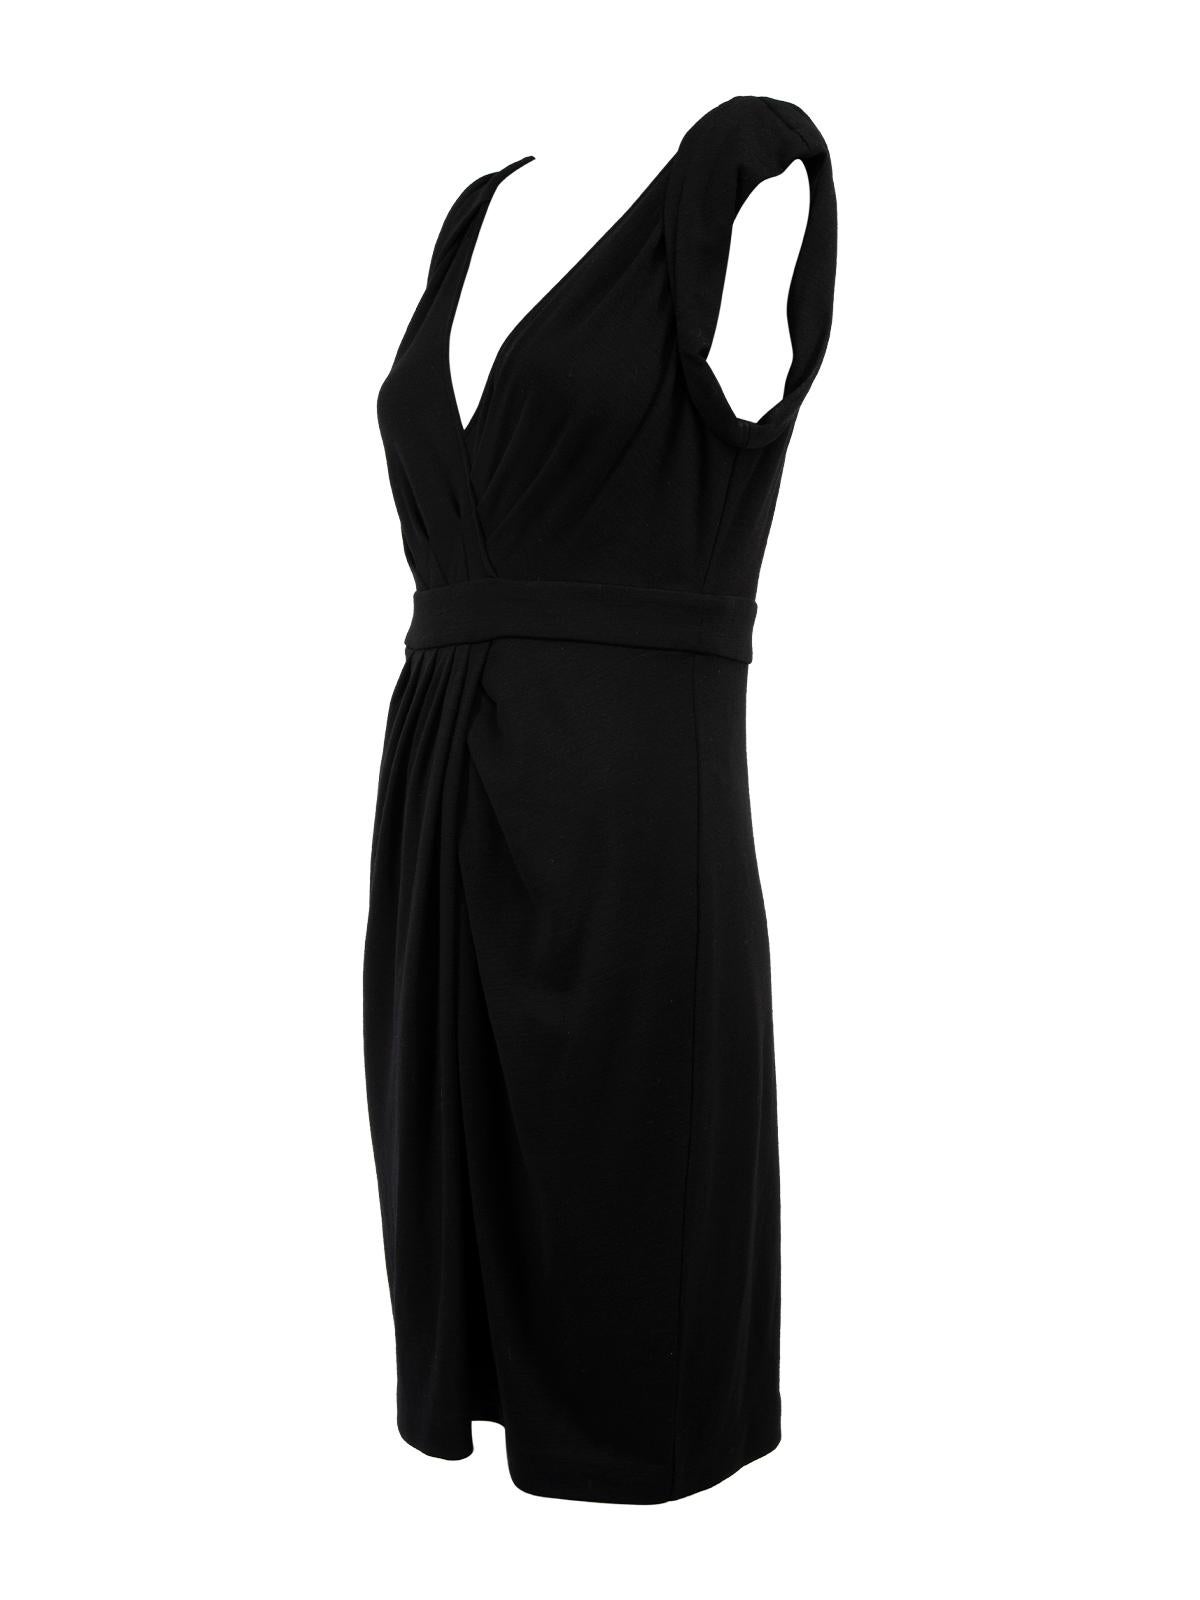 Pre-Loved Diane Von Furstenberg Women's Black Sleeveless Wool Wrap Dress 1